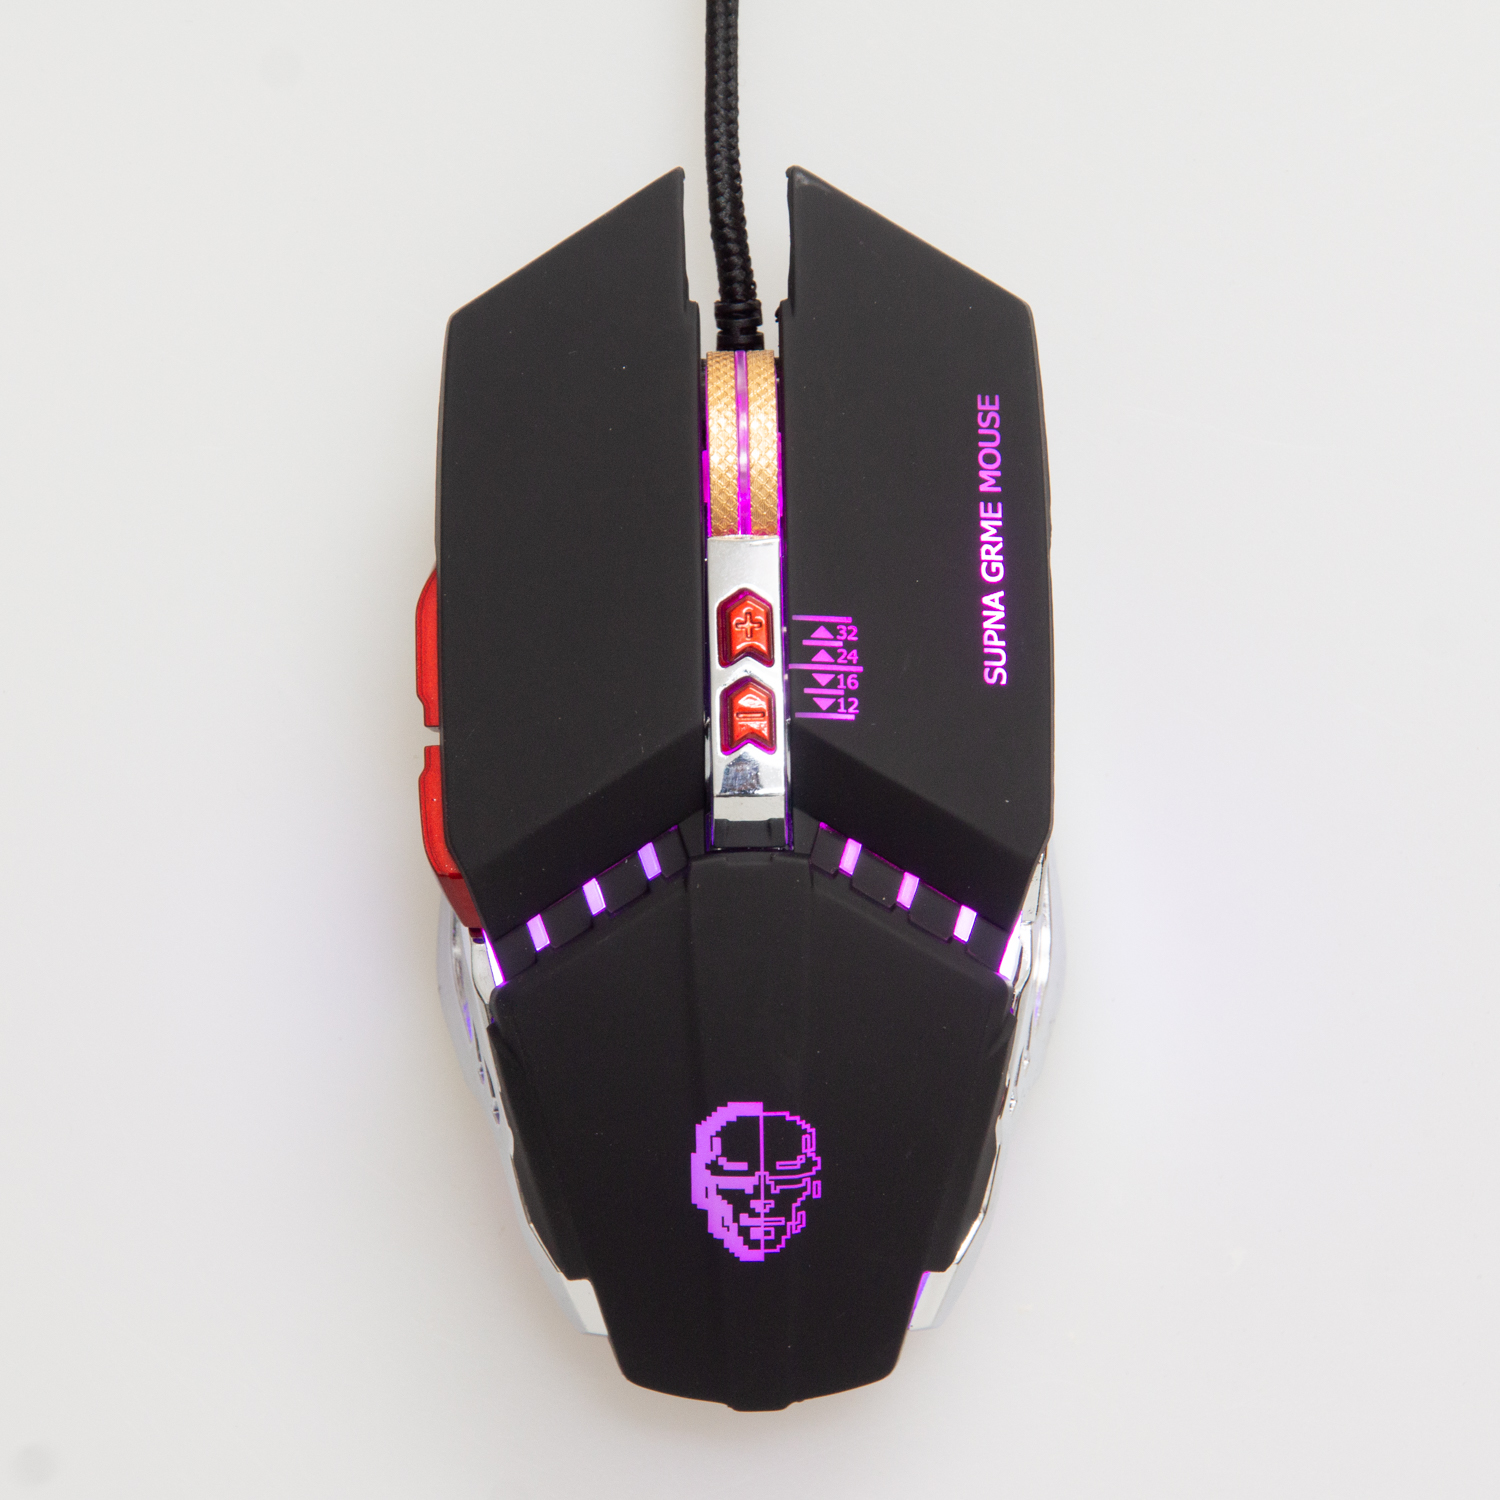 Dynamite Backlit Gaming Mouse (DM 200) BLACK